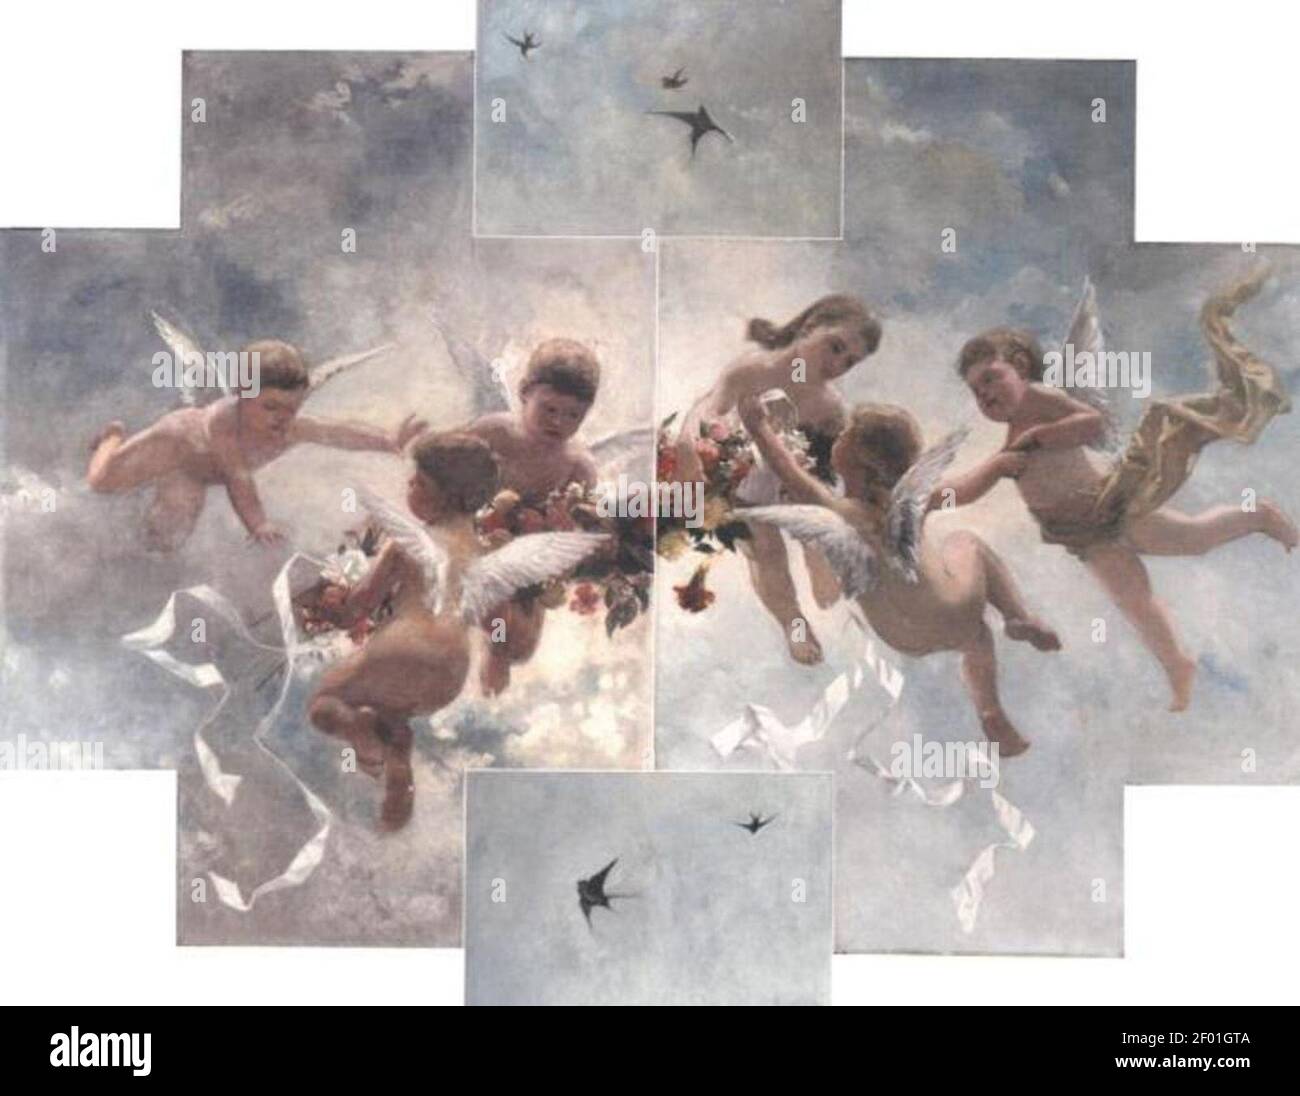 Annoteren band talent Piet Mondriaan - Plafondschildering met putti en vogels Stock Photo - Alamy